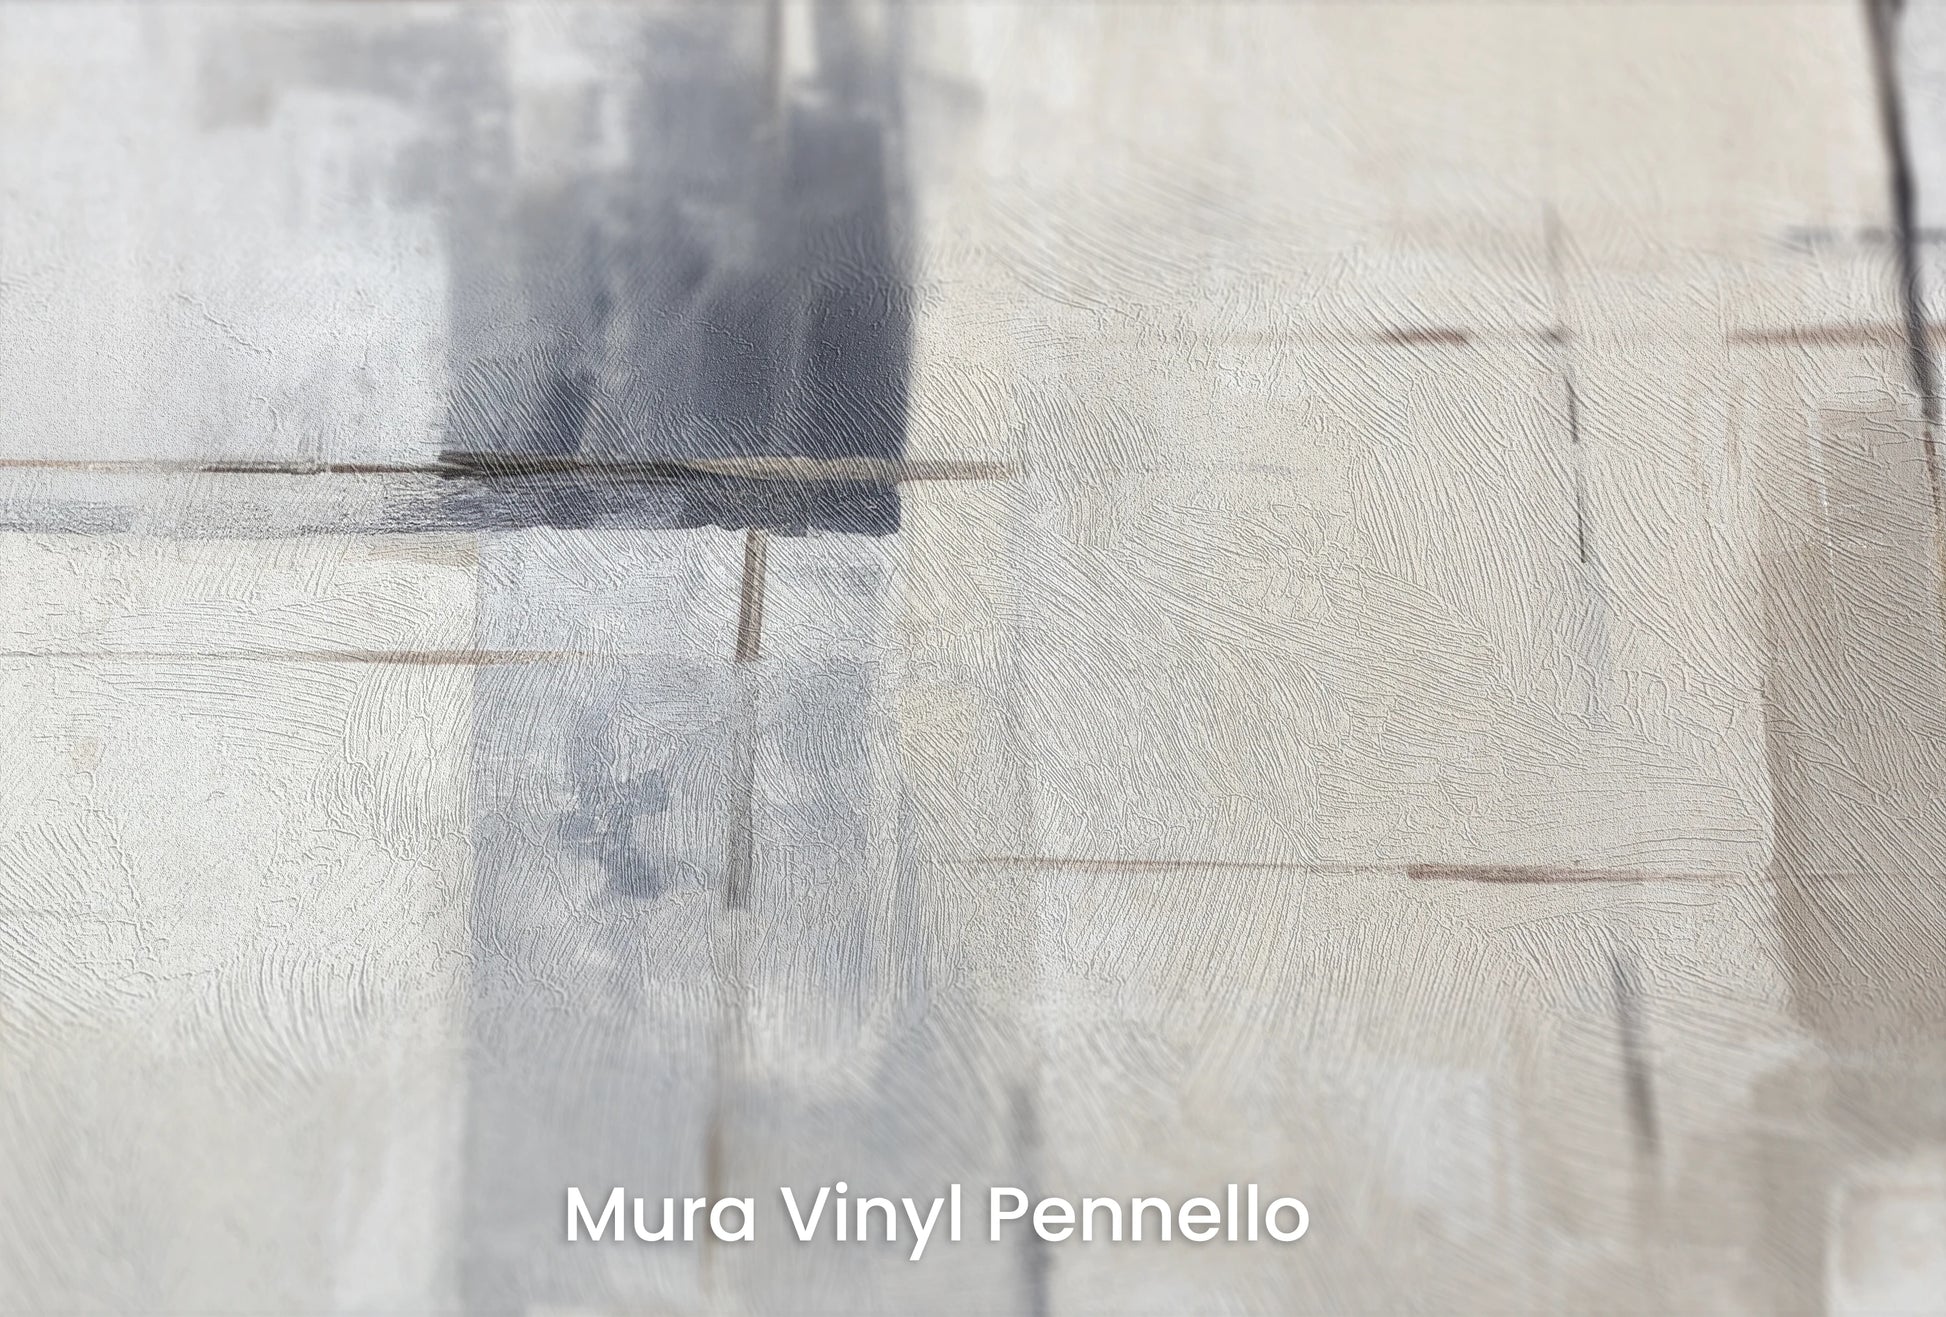 Zbliżenie na artystyczną fototapetę o nazwie Elemental Blocks na podłożu Mura Vinyl Pennello - faktura pociągnięć pędzla malarskiego.